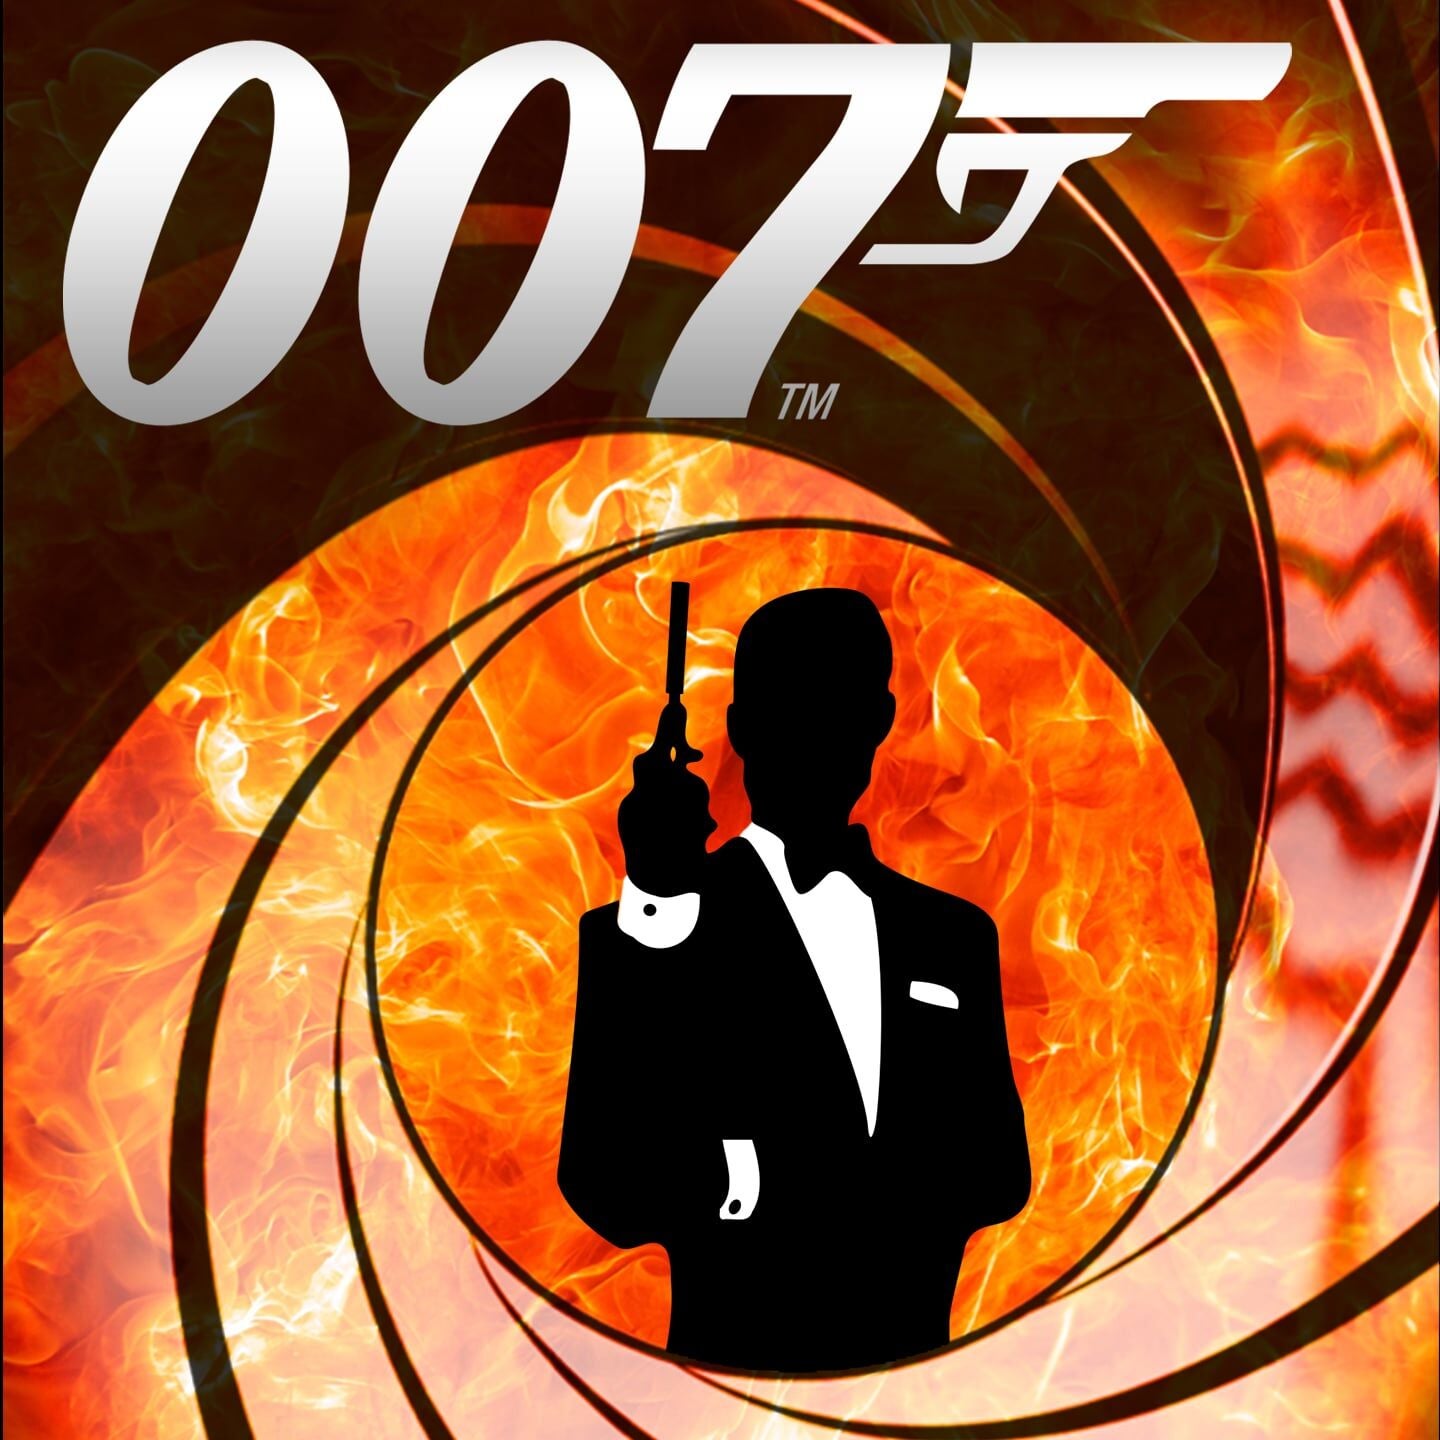 Charlotte Symphony: 007: The Best of James Bond | CarolinaTix